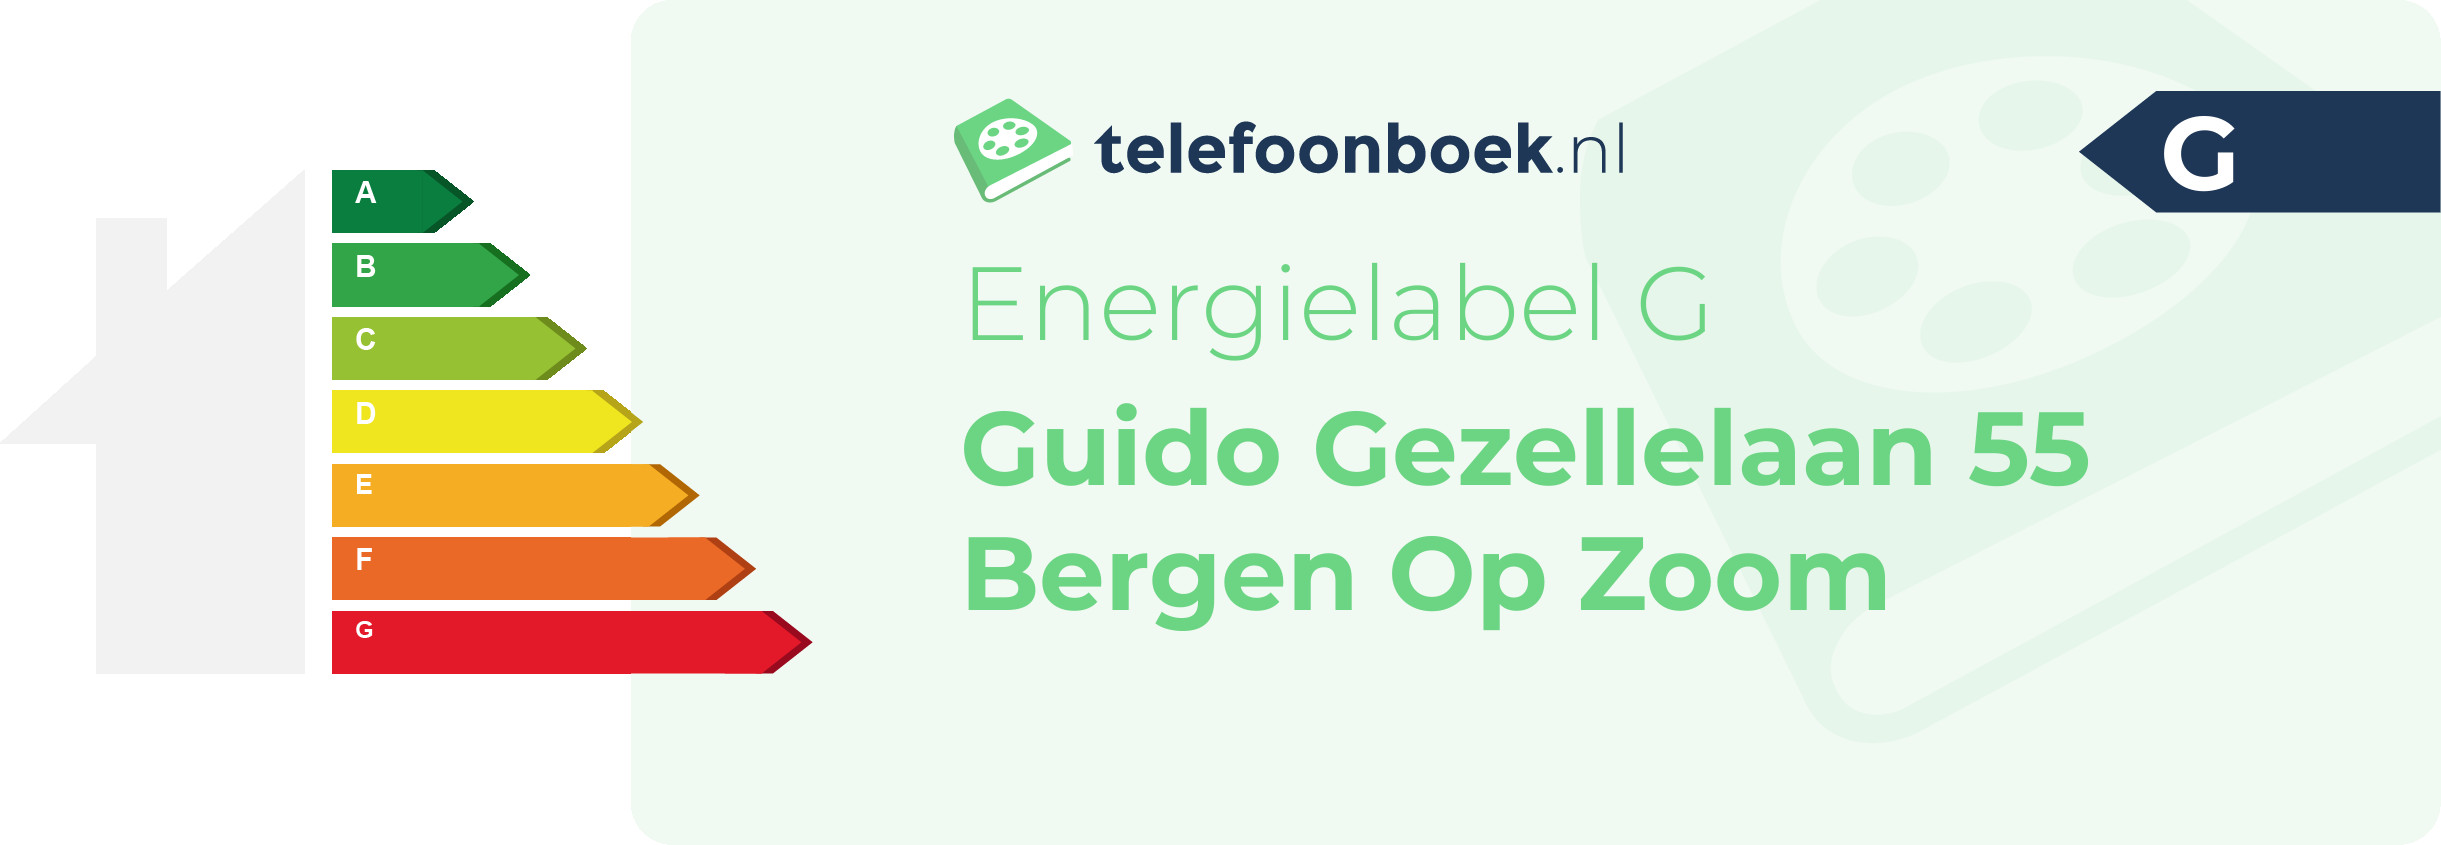 Energielabel Guido Gezellelaan 55 Bergen Op Zoom